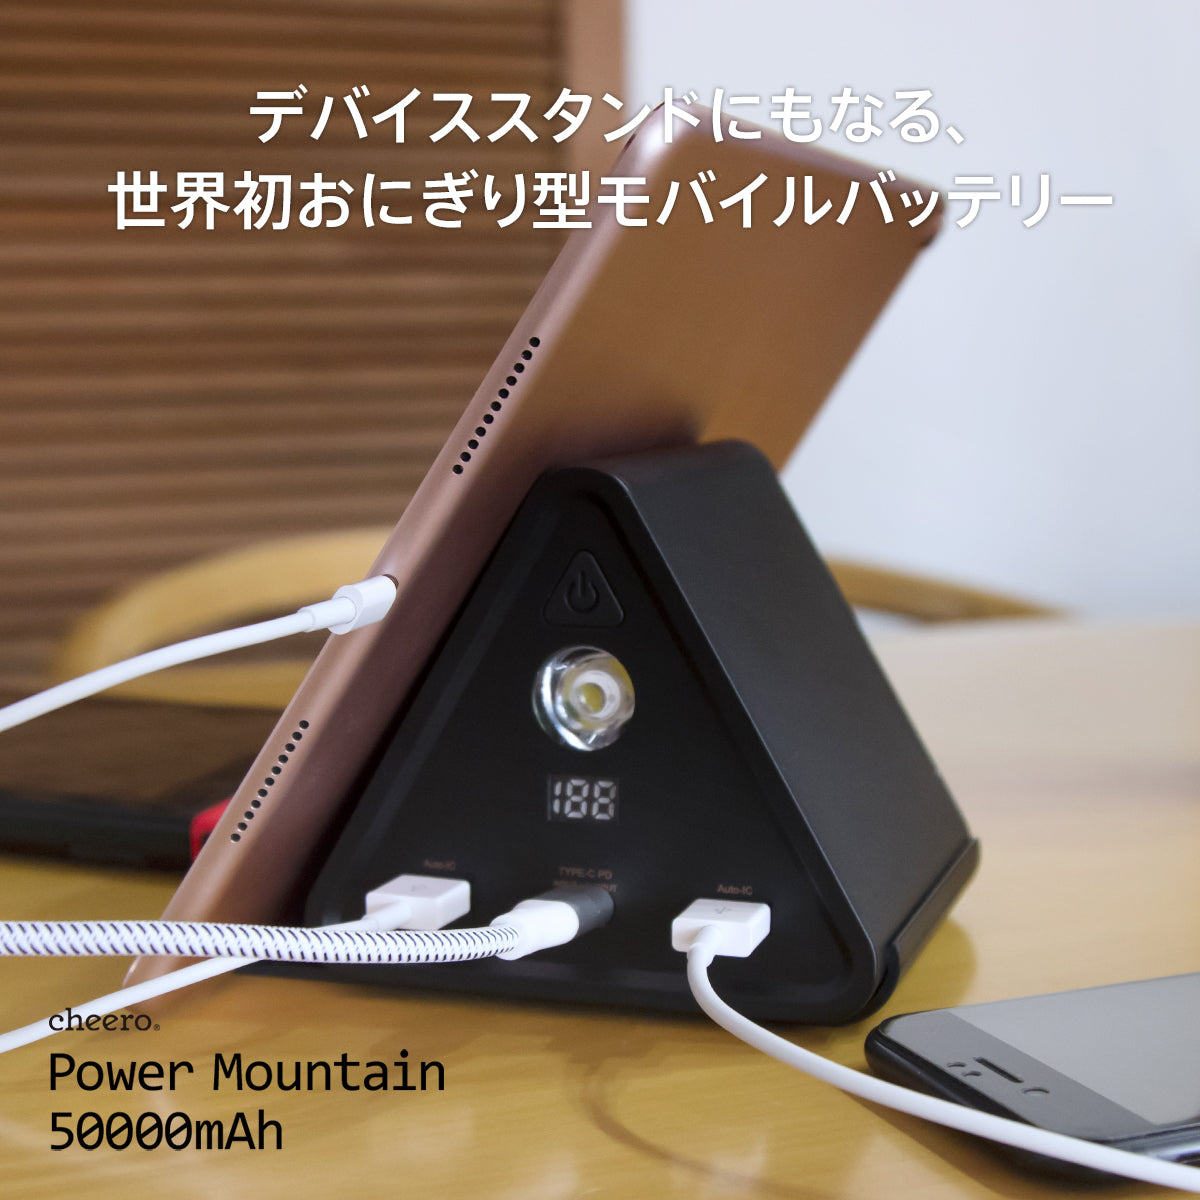 【販売終了】cheero Power Mountain 50000mAh